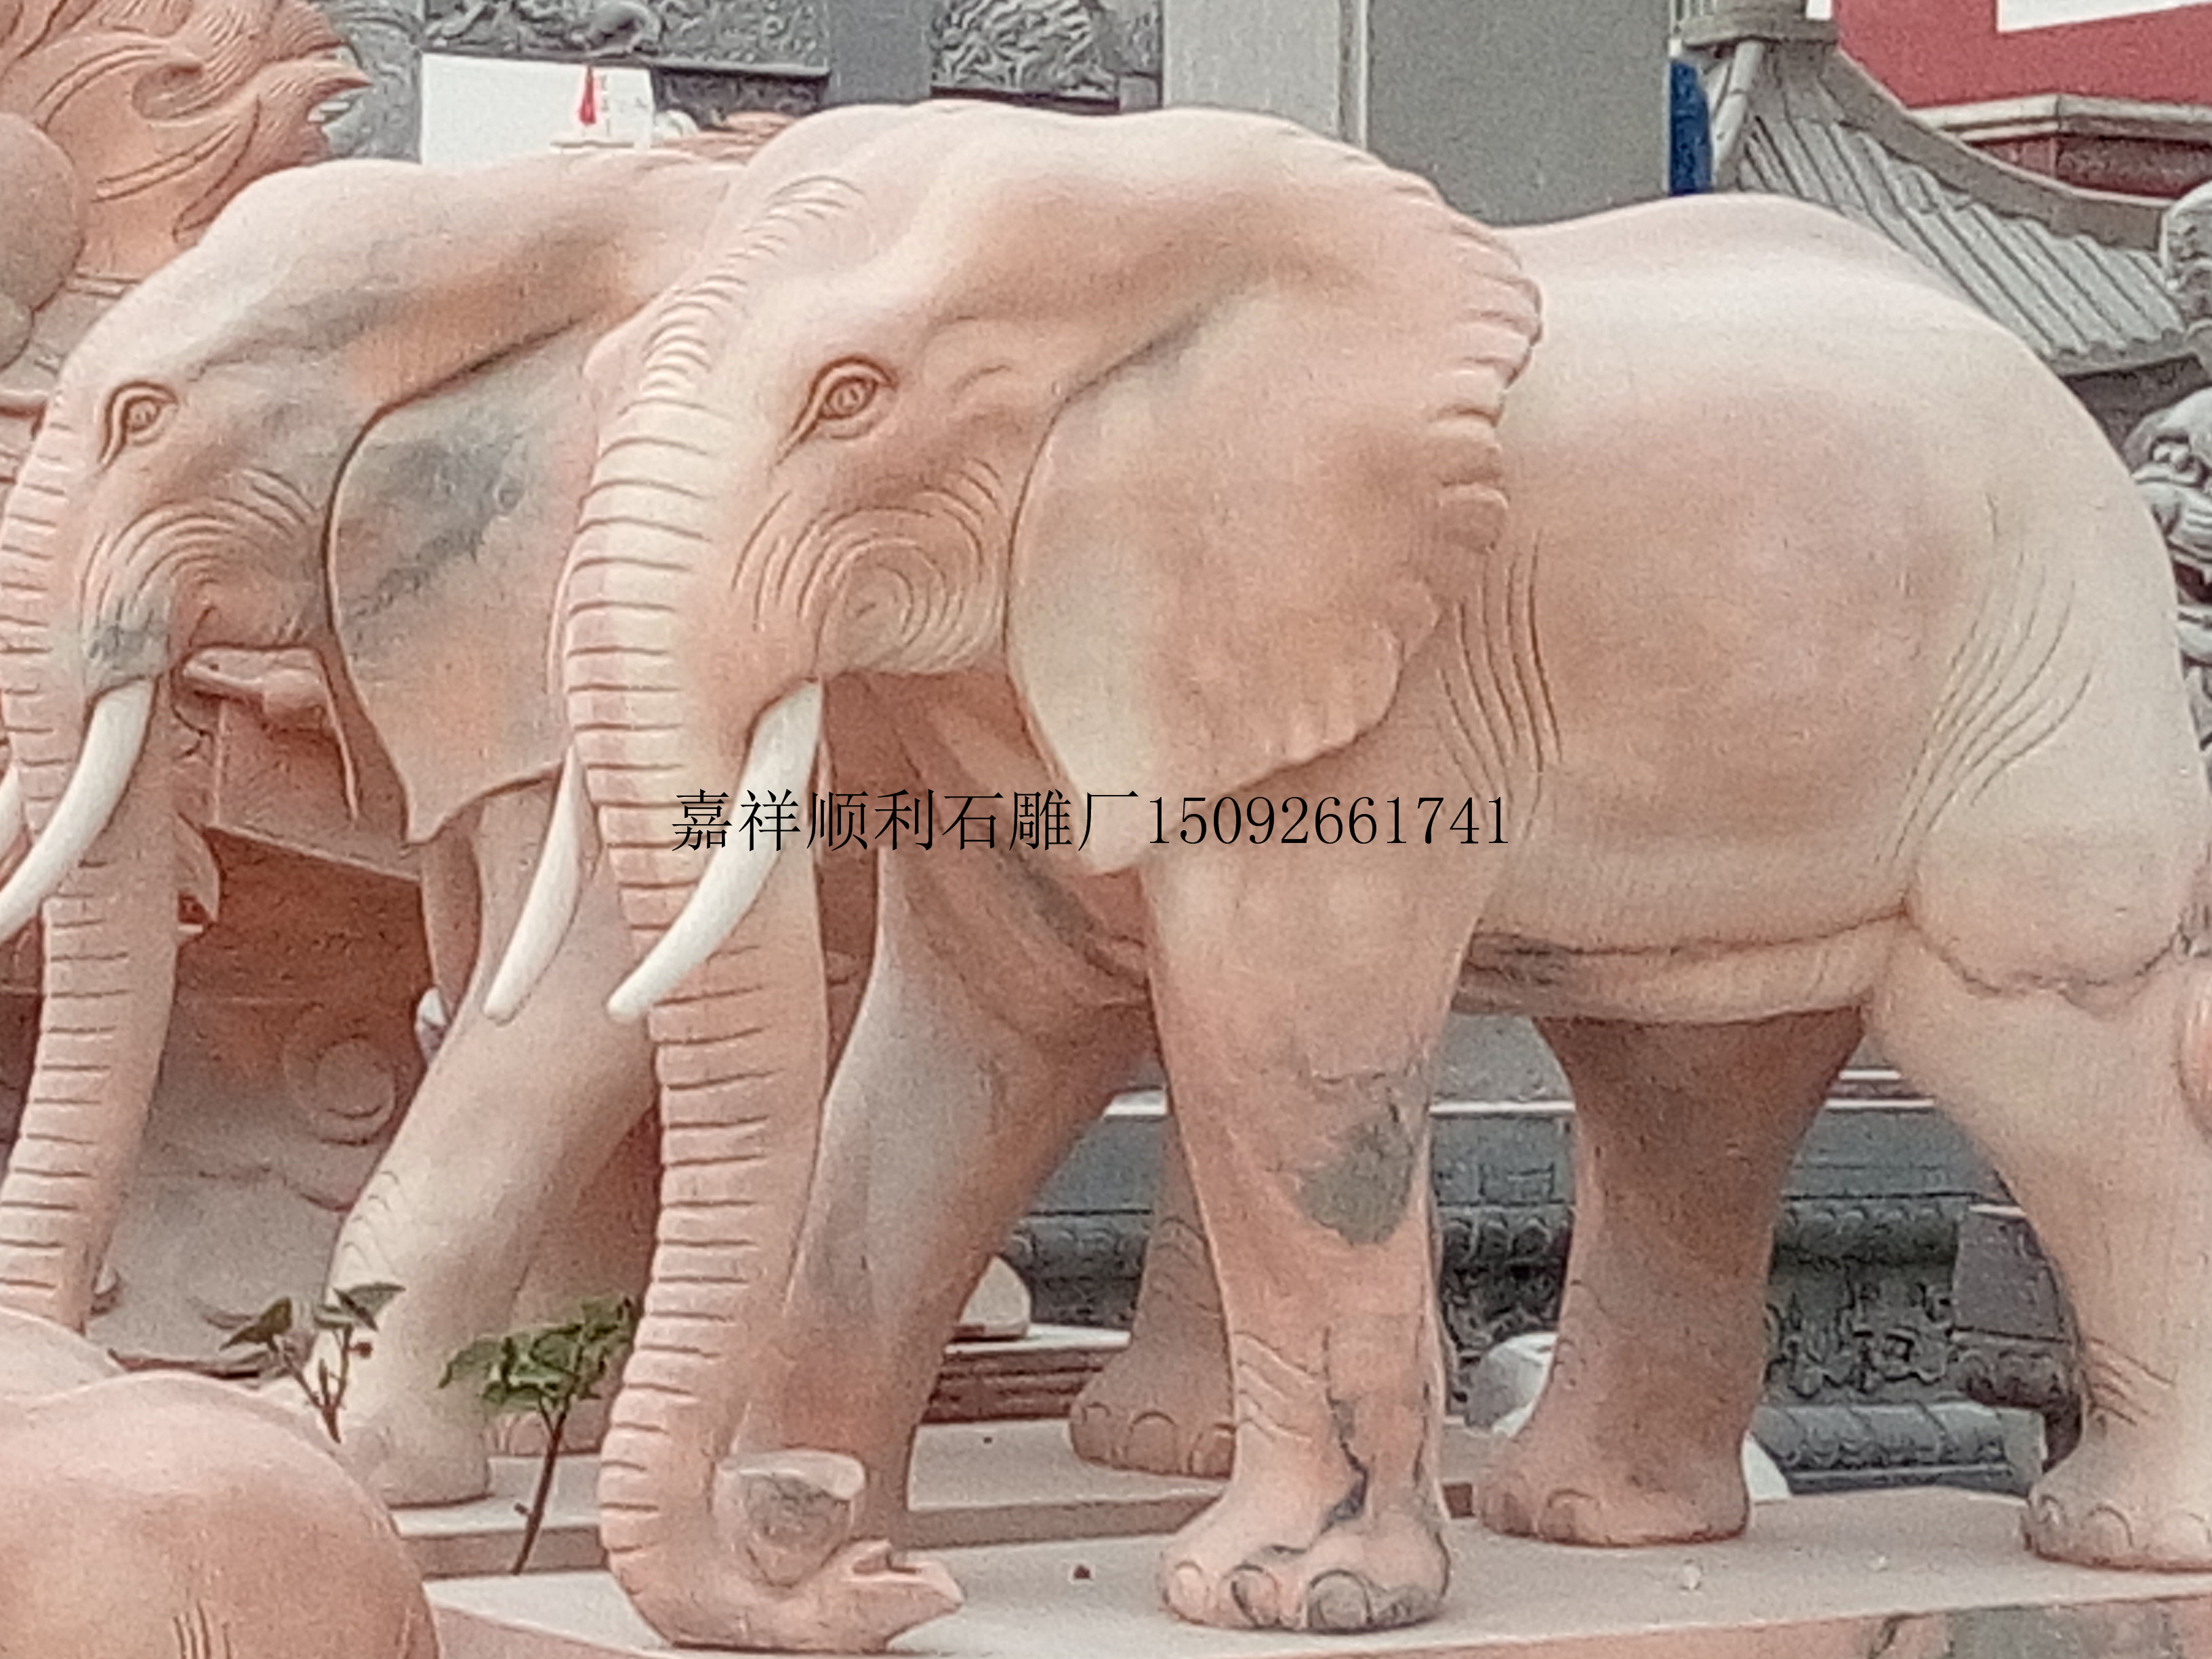 石雕大象 石雕大象喷水大象 石雕大象喷水大象如意大象 石雕大象喷水大象寺庙石大象